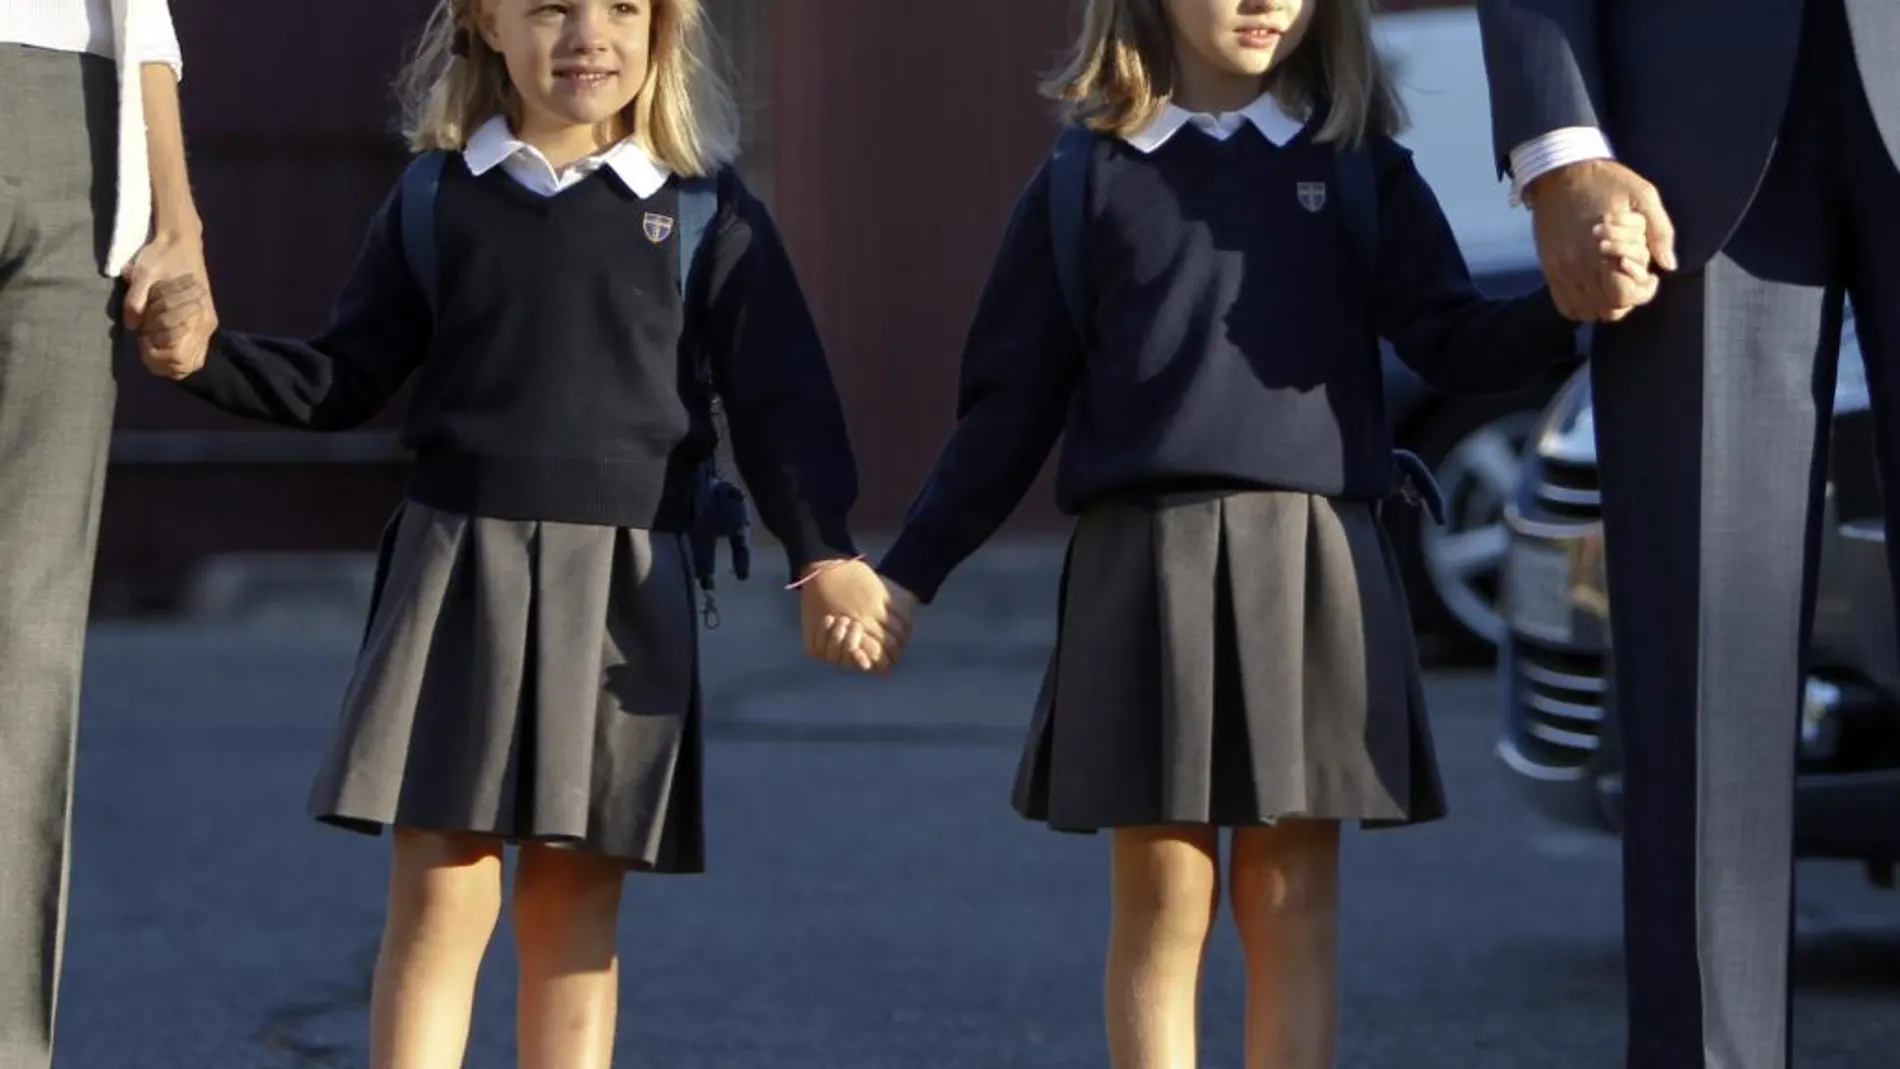 La Princesa de Asturias y su hermana, con el uniforme escolar